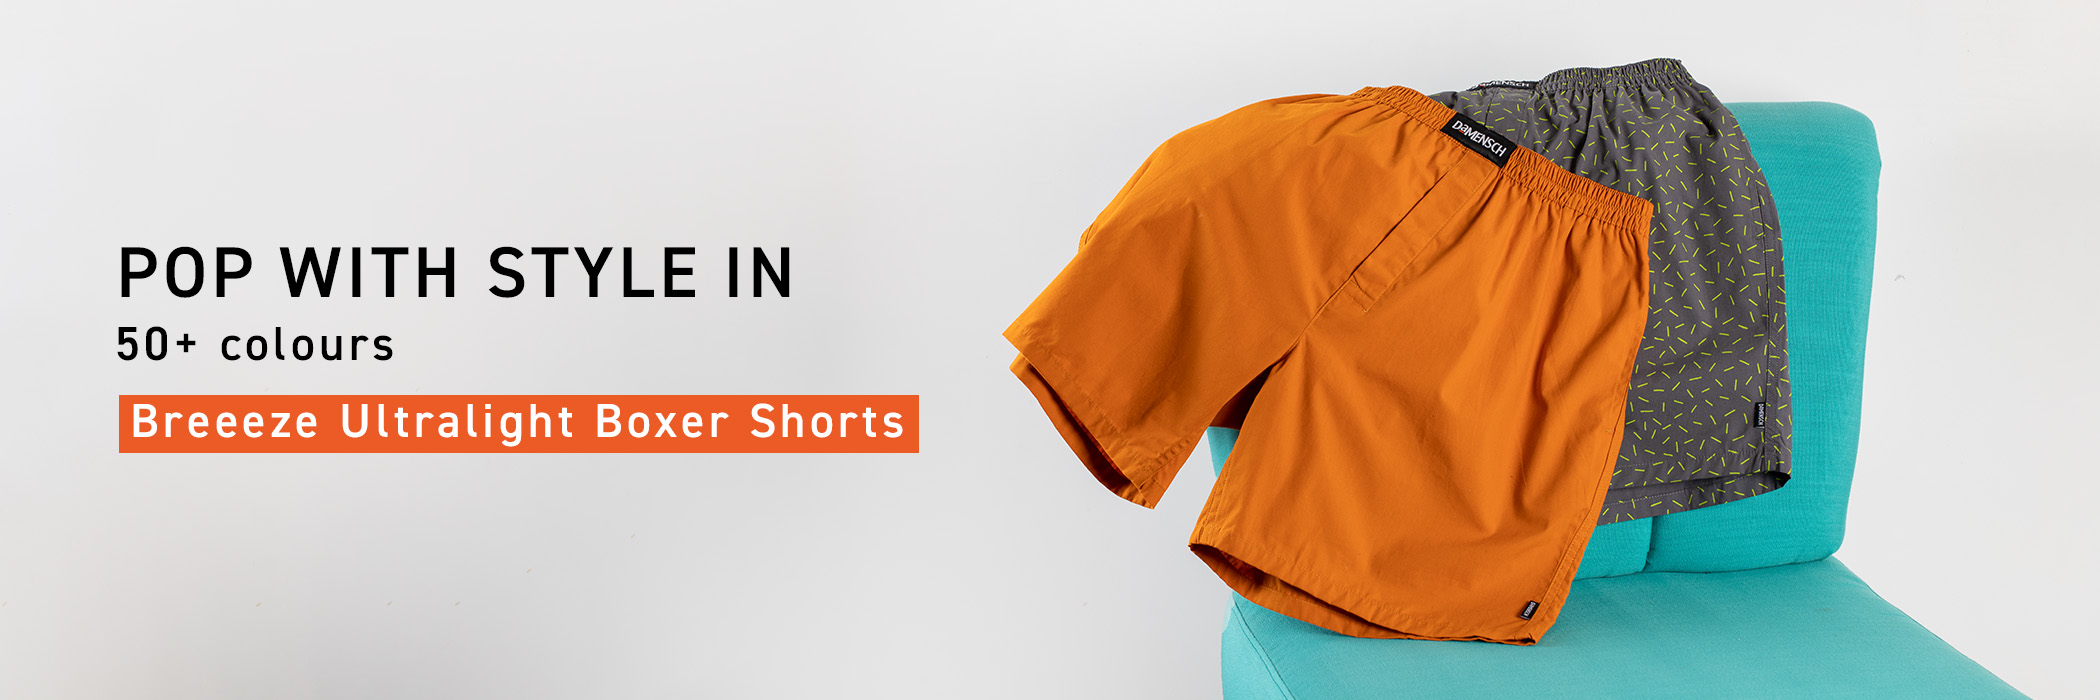 Shop Boxer Shorts for Men | Boxer Pants Online - DaMENSCH